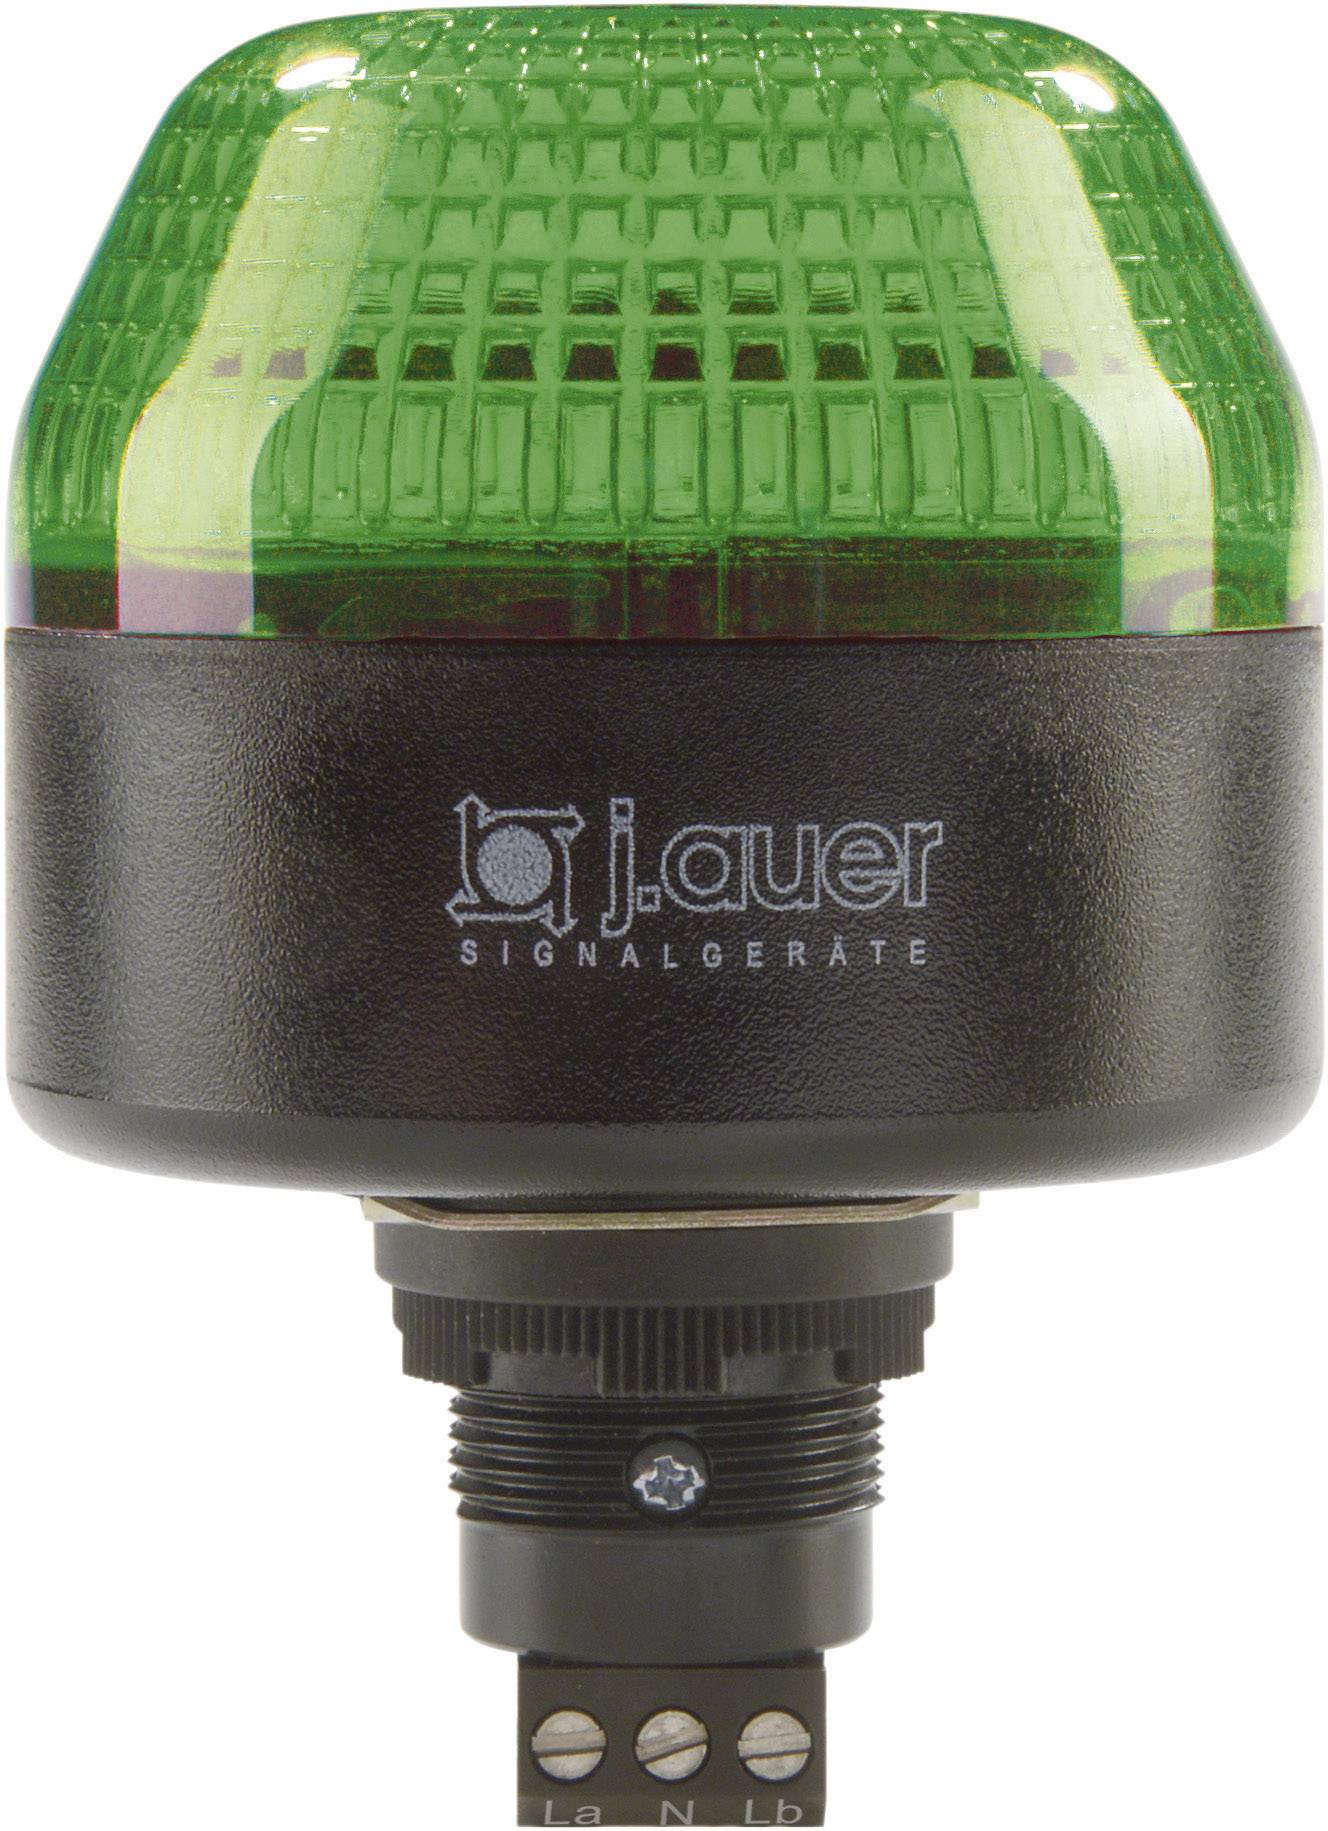 AUER SIGNAL Signalleuchte LED Auer Signalgeräte IBL Grün Dauerlicht, Blinklicht 230 V/AC